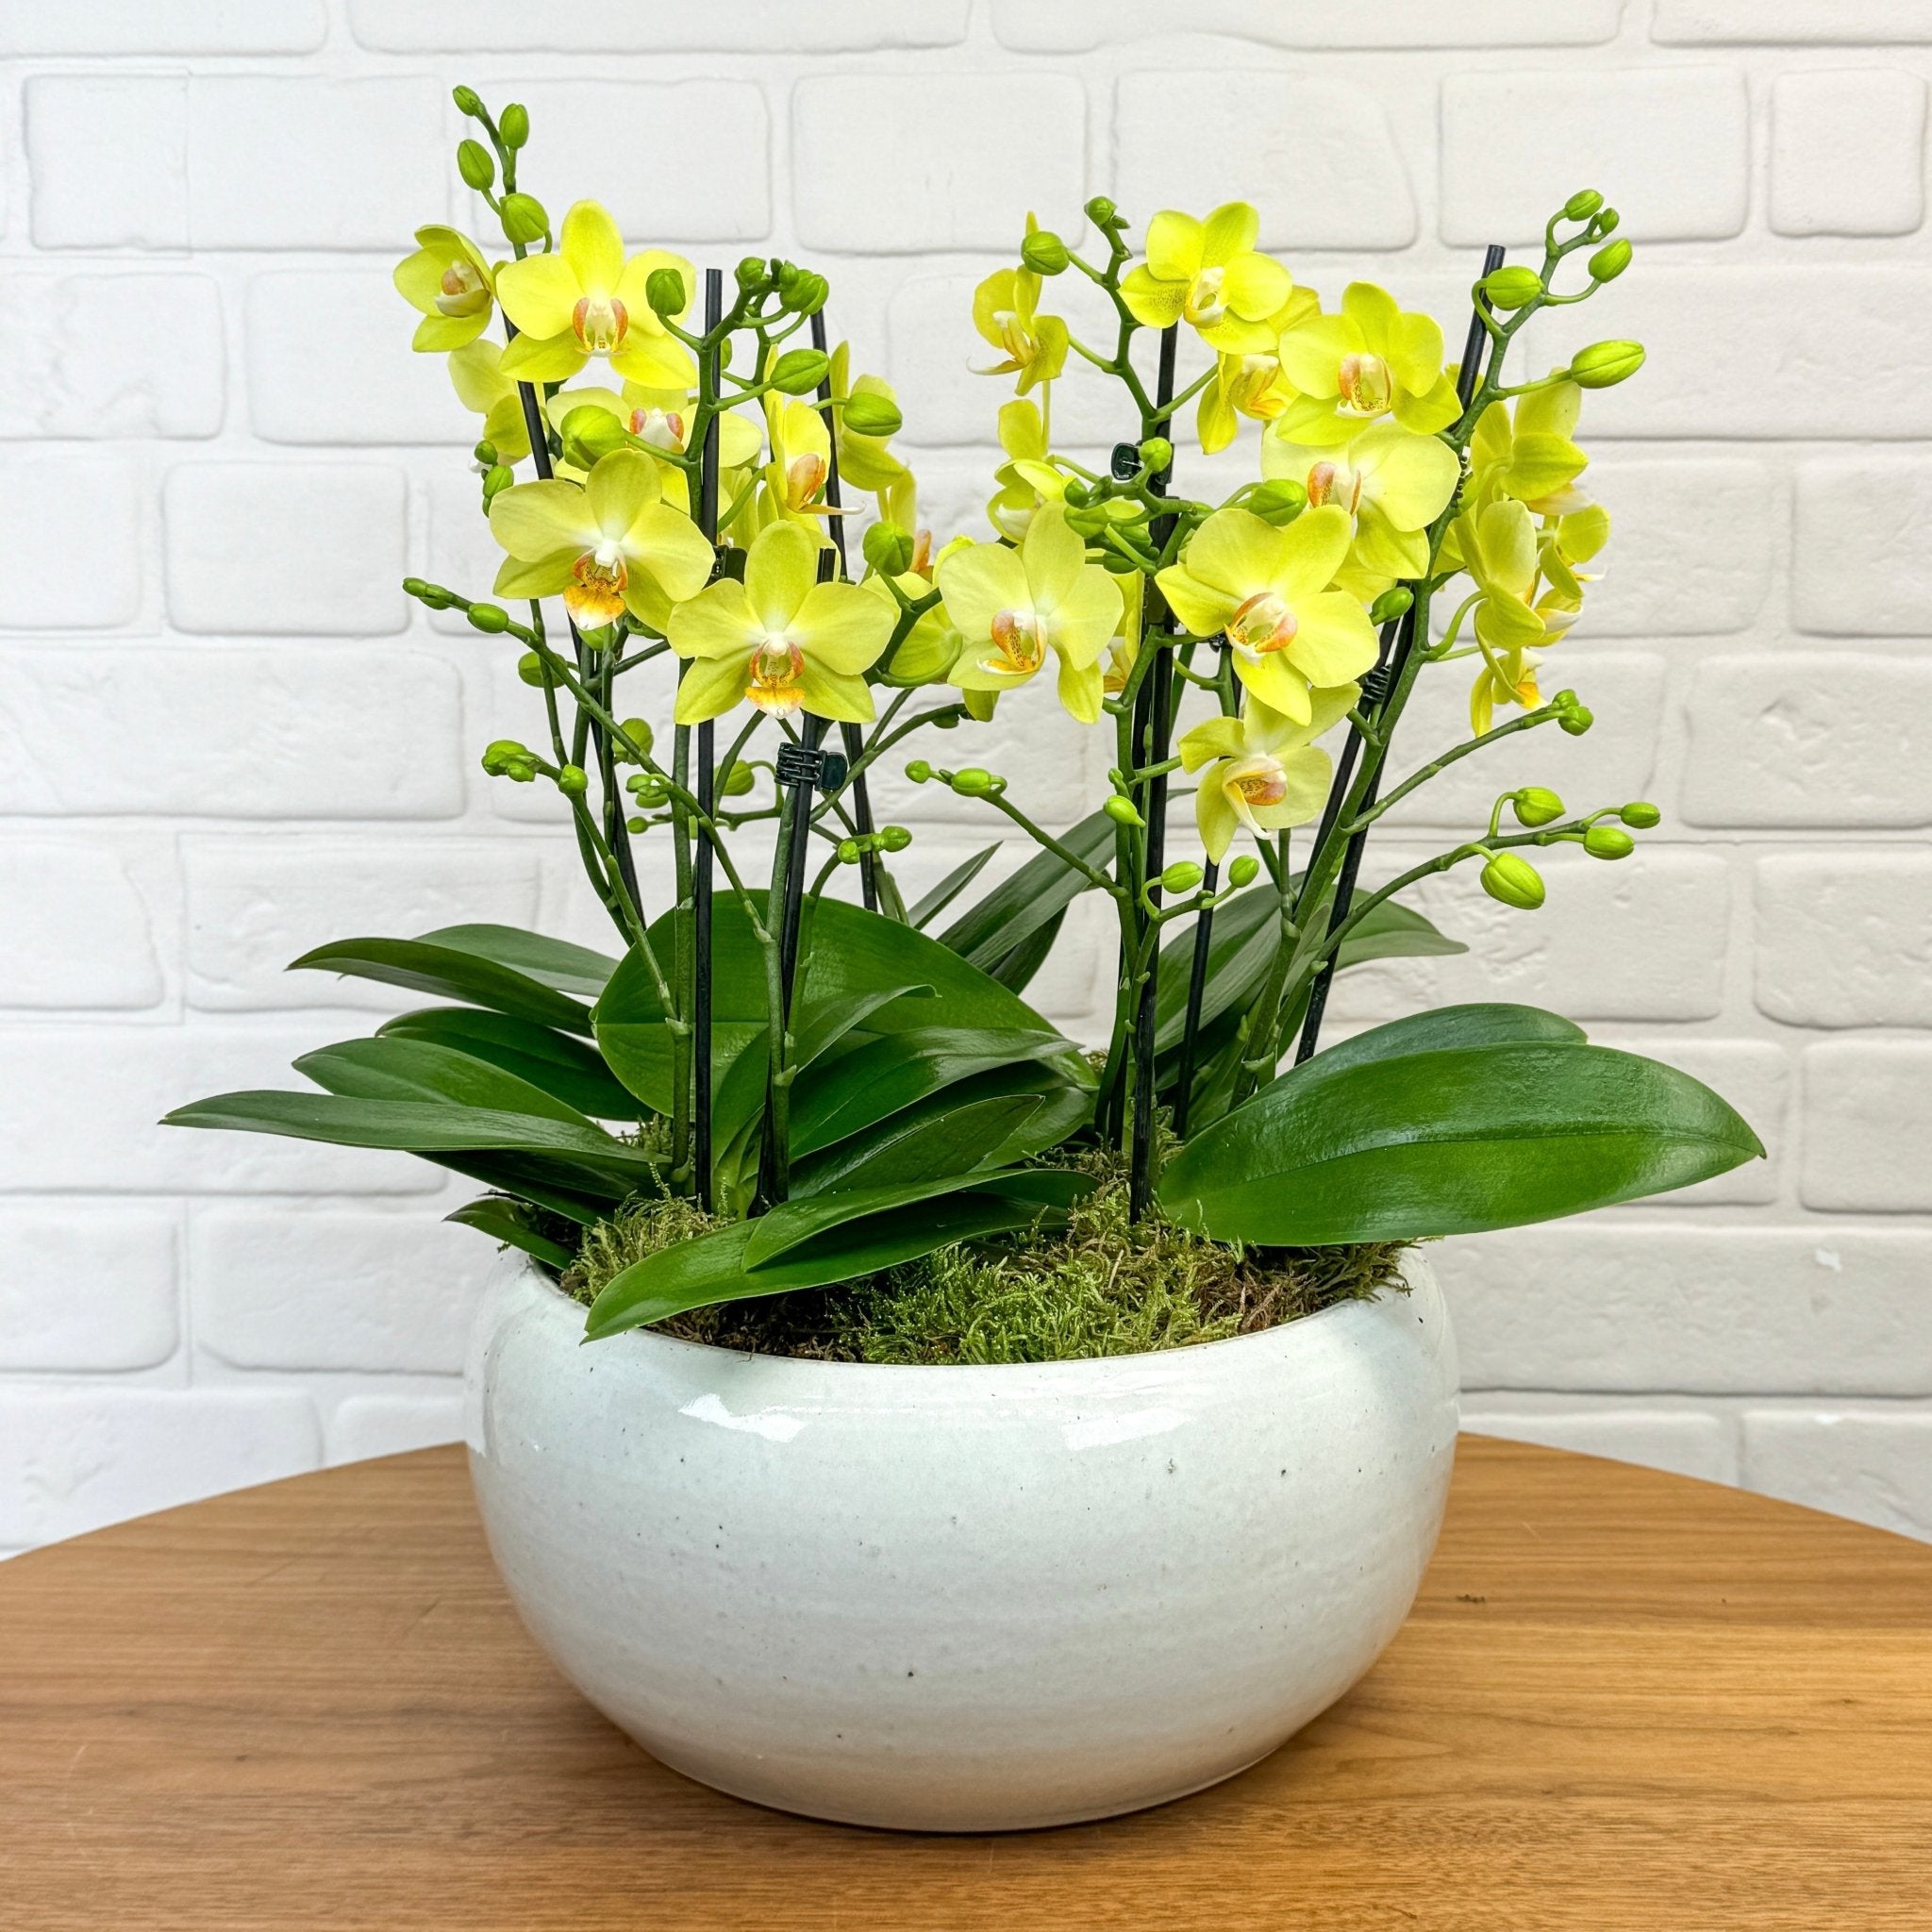 Hengistbury: Quartet of Orchids - Love Orchids